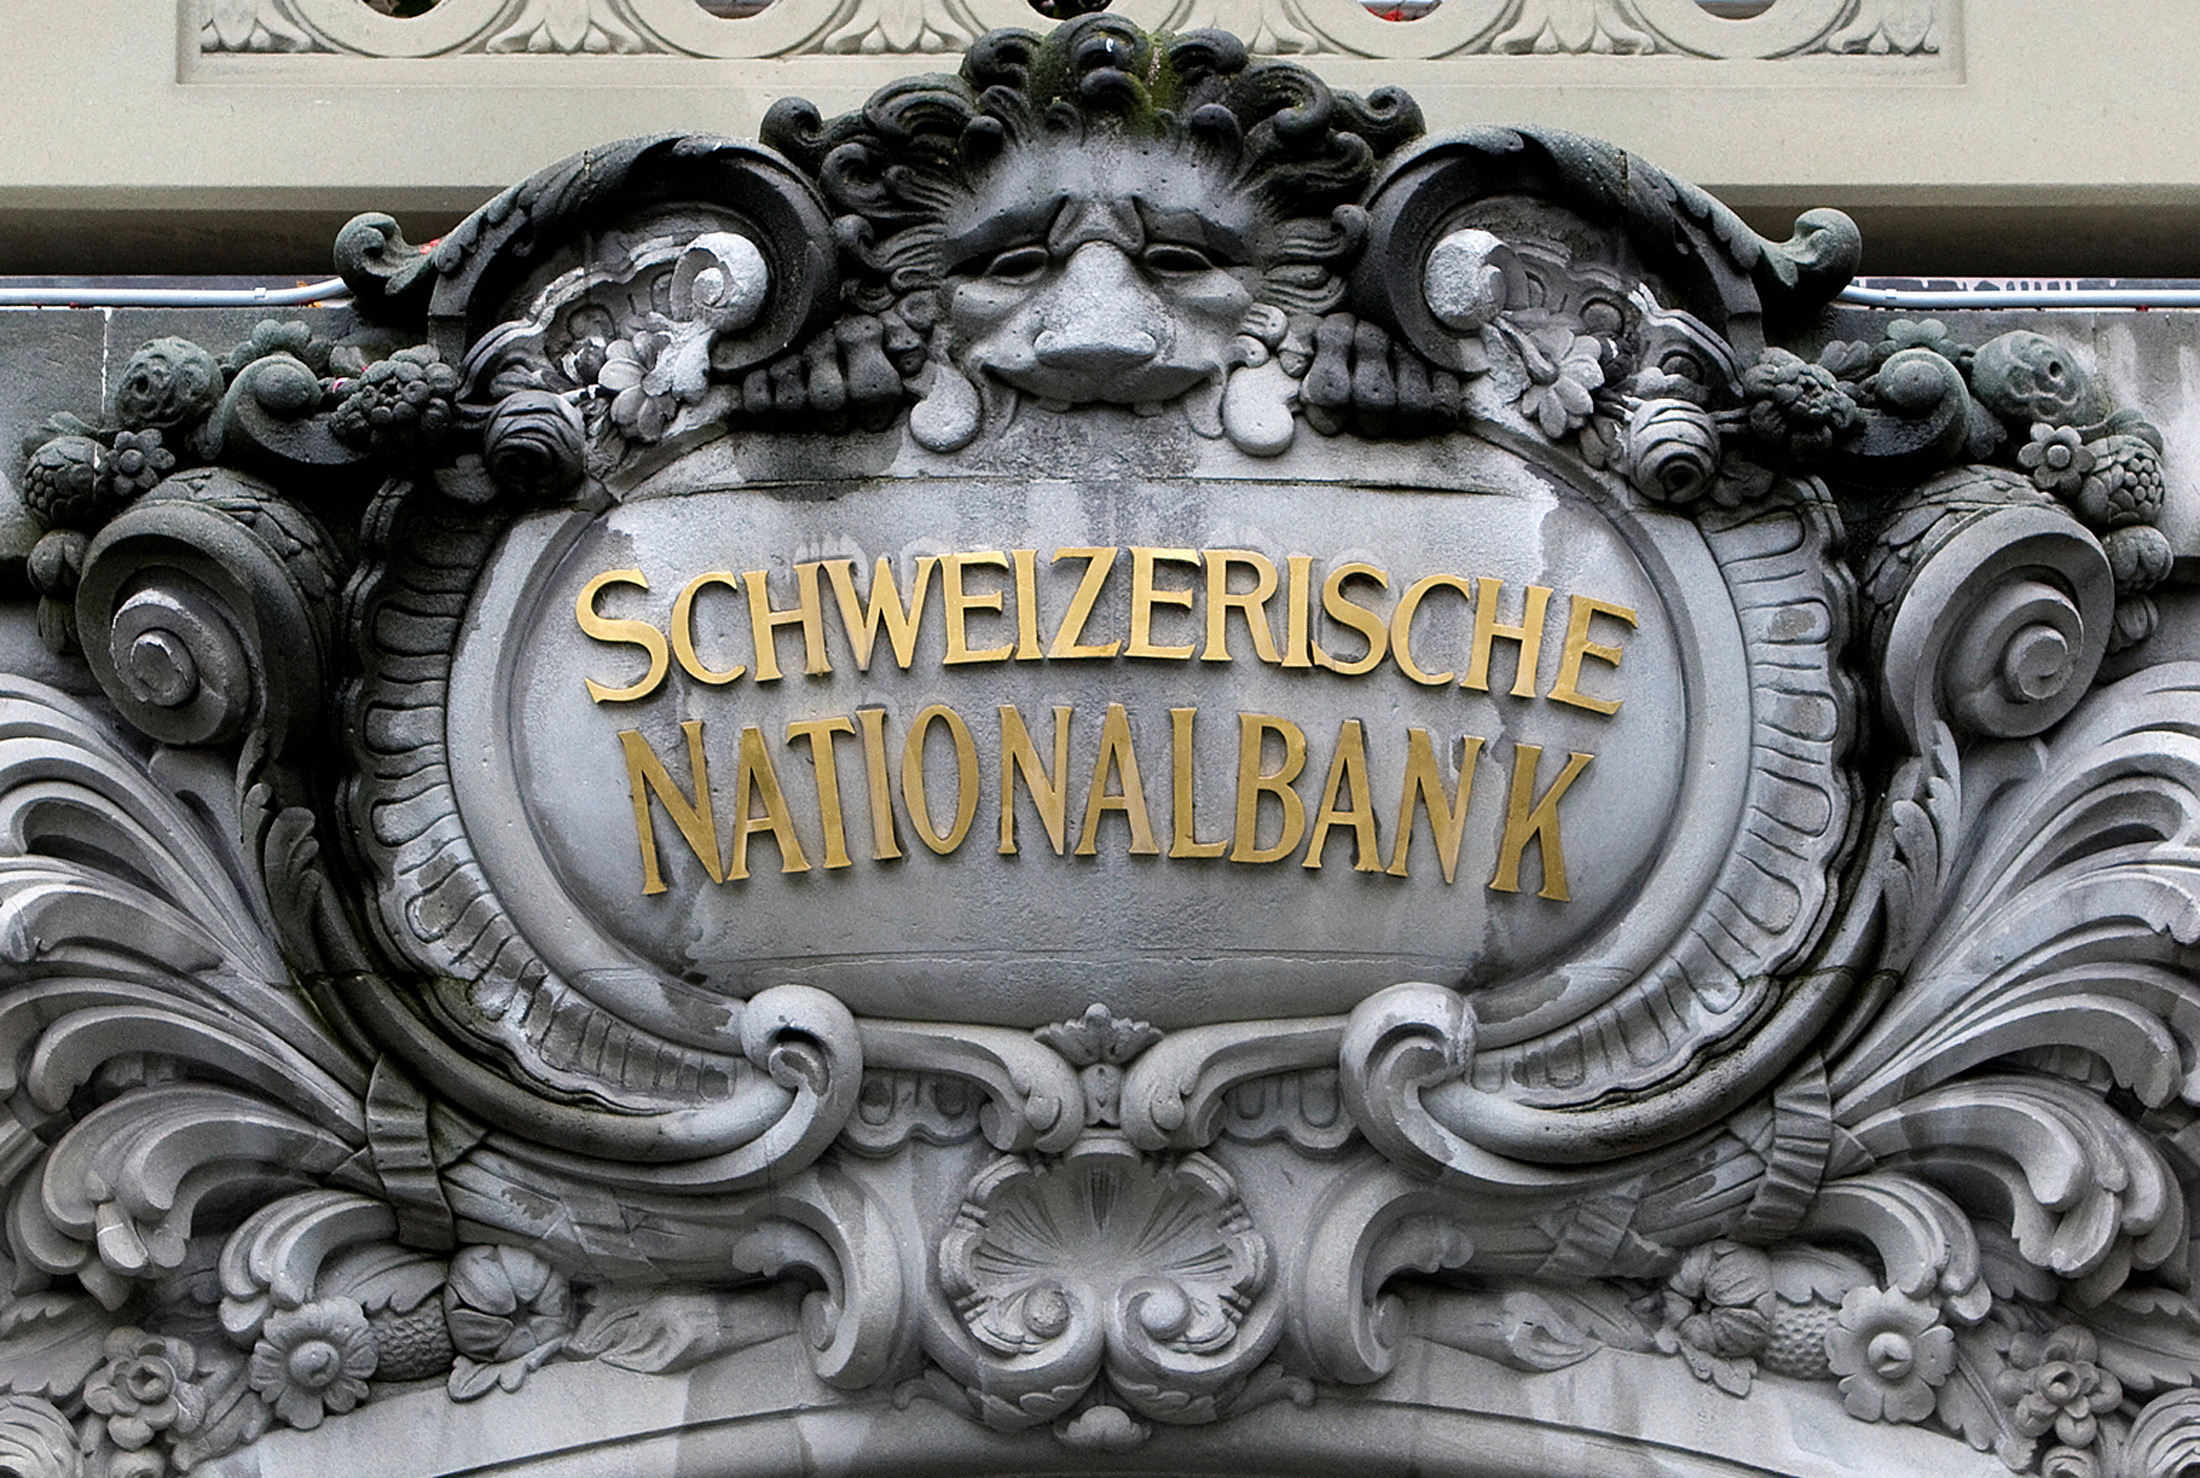 Κεντρική τράπεζα Ελβετίας: Μείωση των επιτοκίων για δεύτερη συνεχόμενη συνεδρίαση